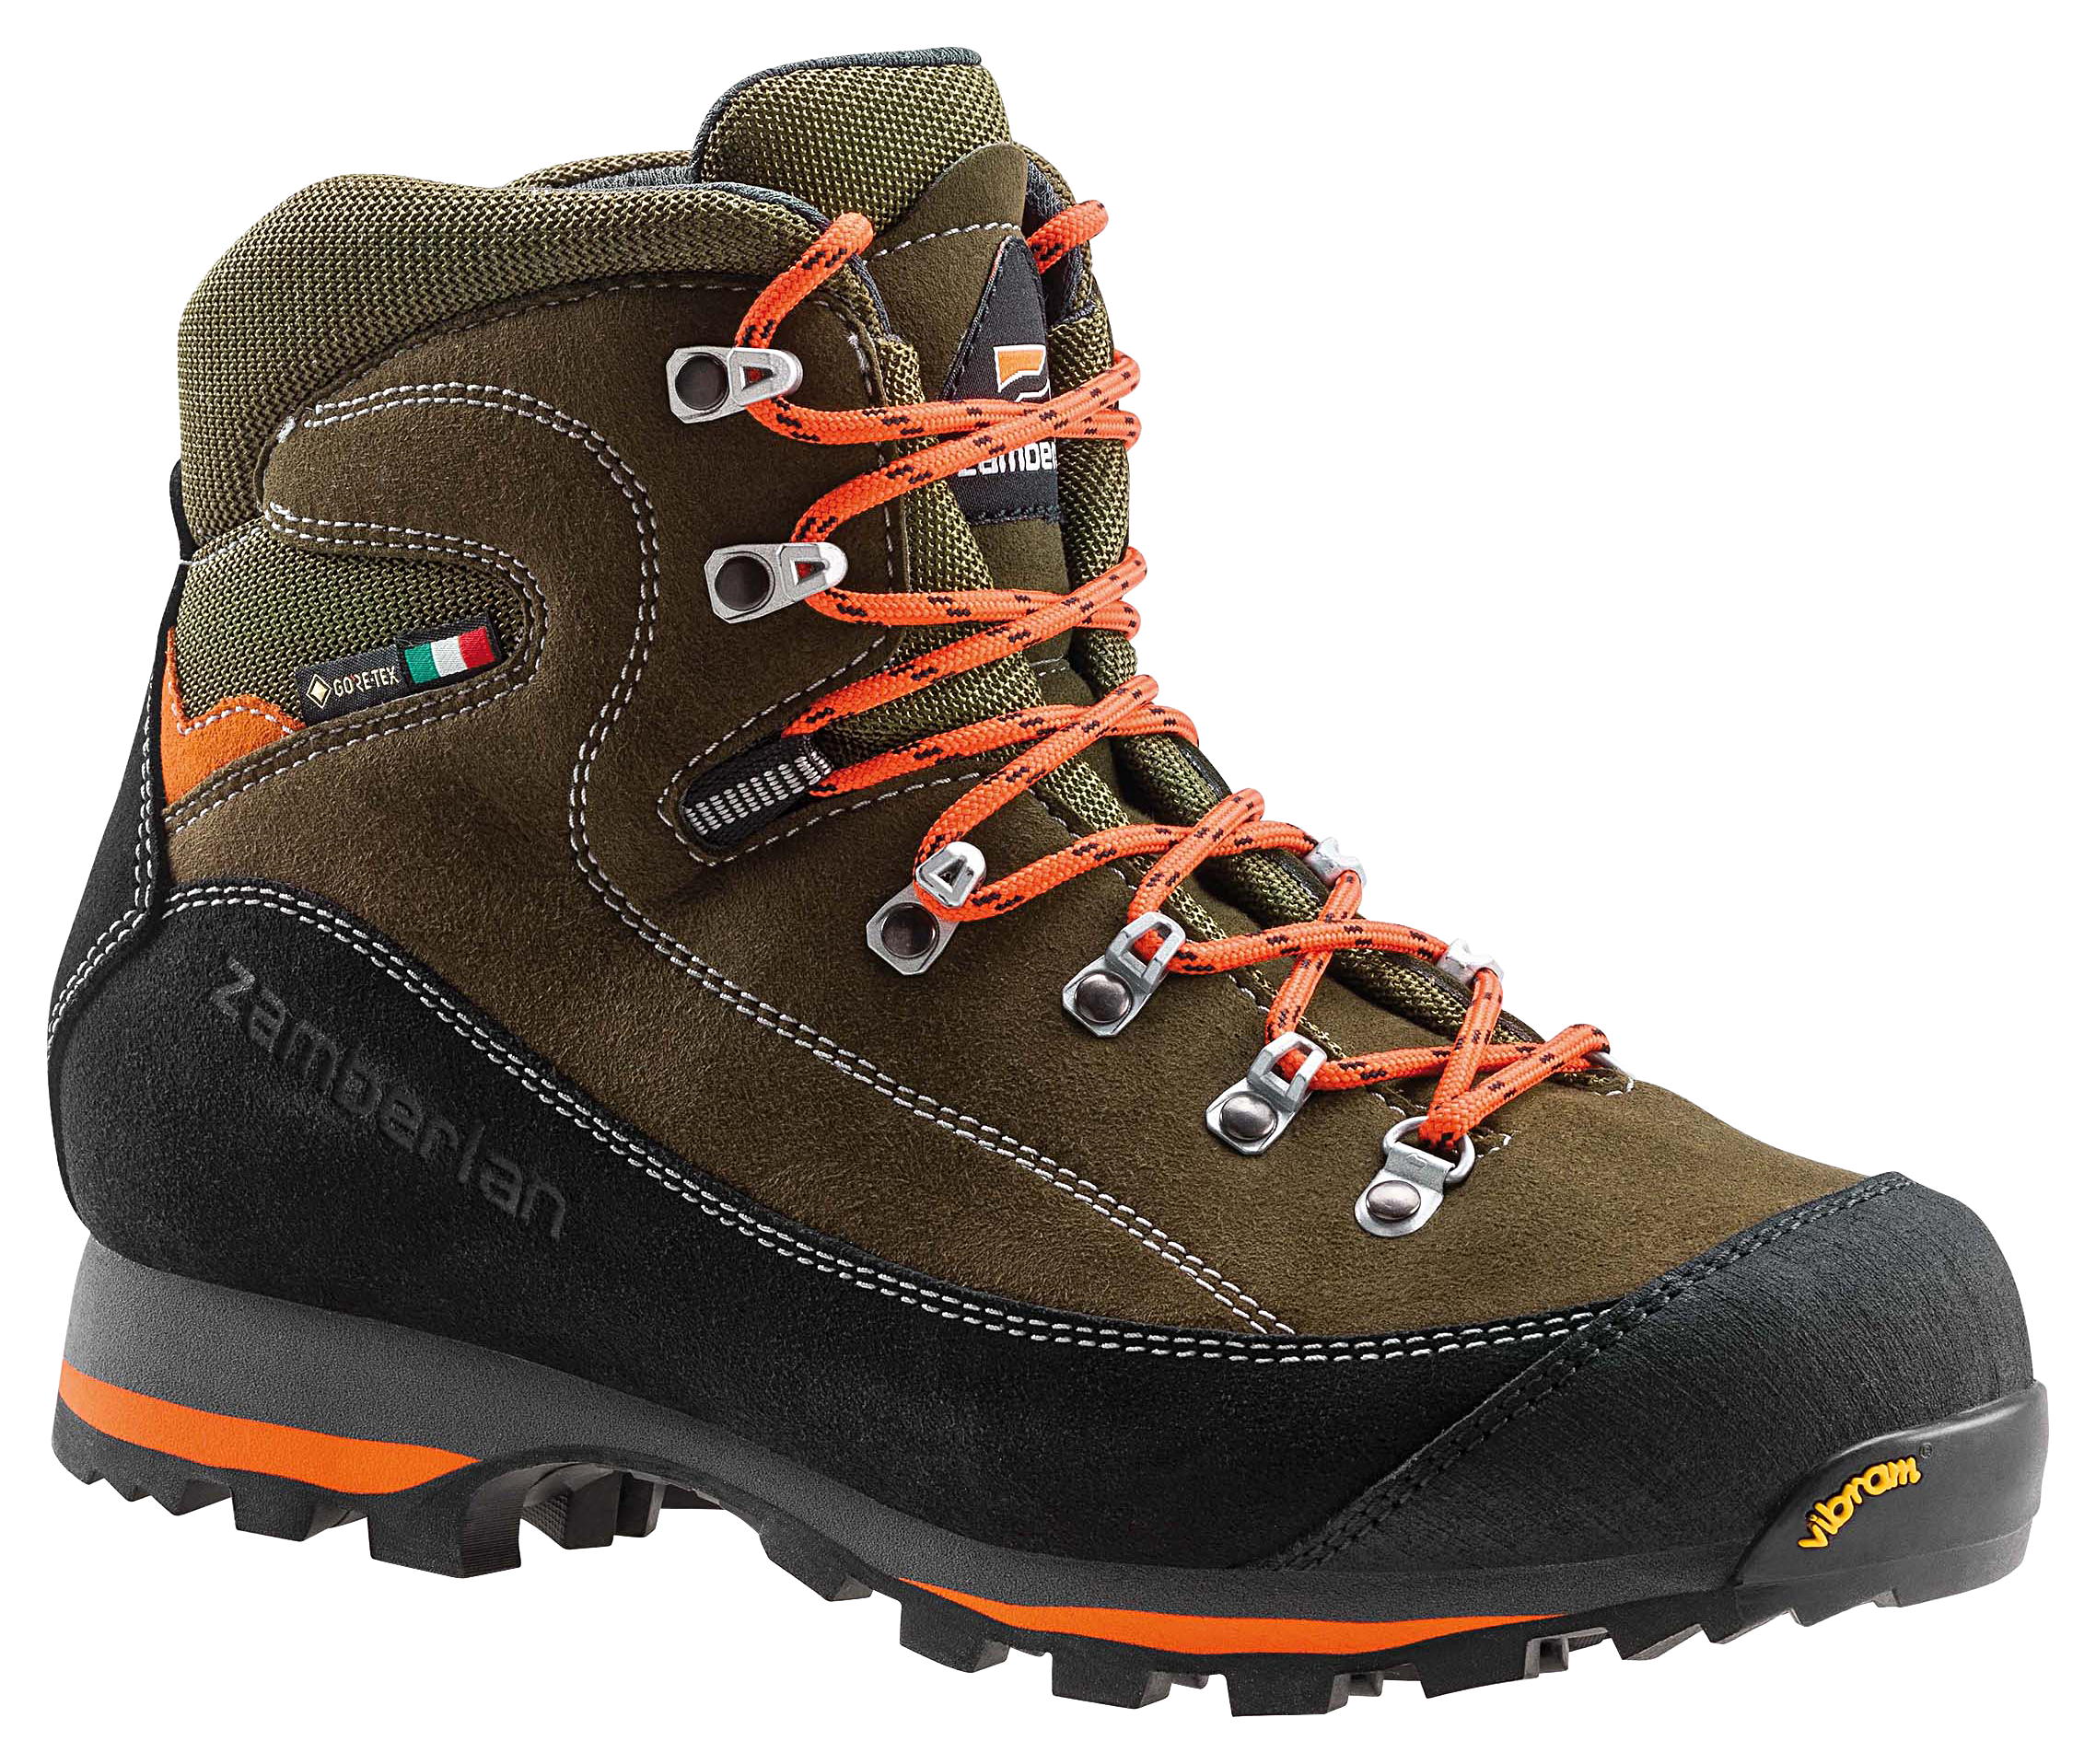 Zamberlan 700 Sierra GTX Waterproof Hunting Boots for Men - Forest - 9.5M